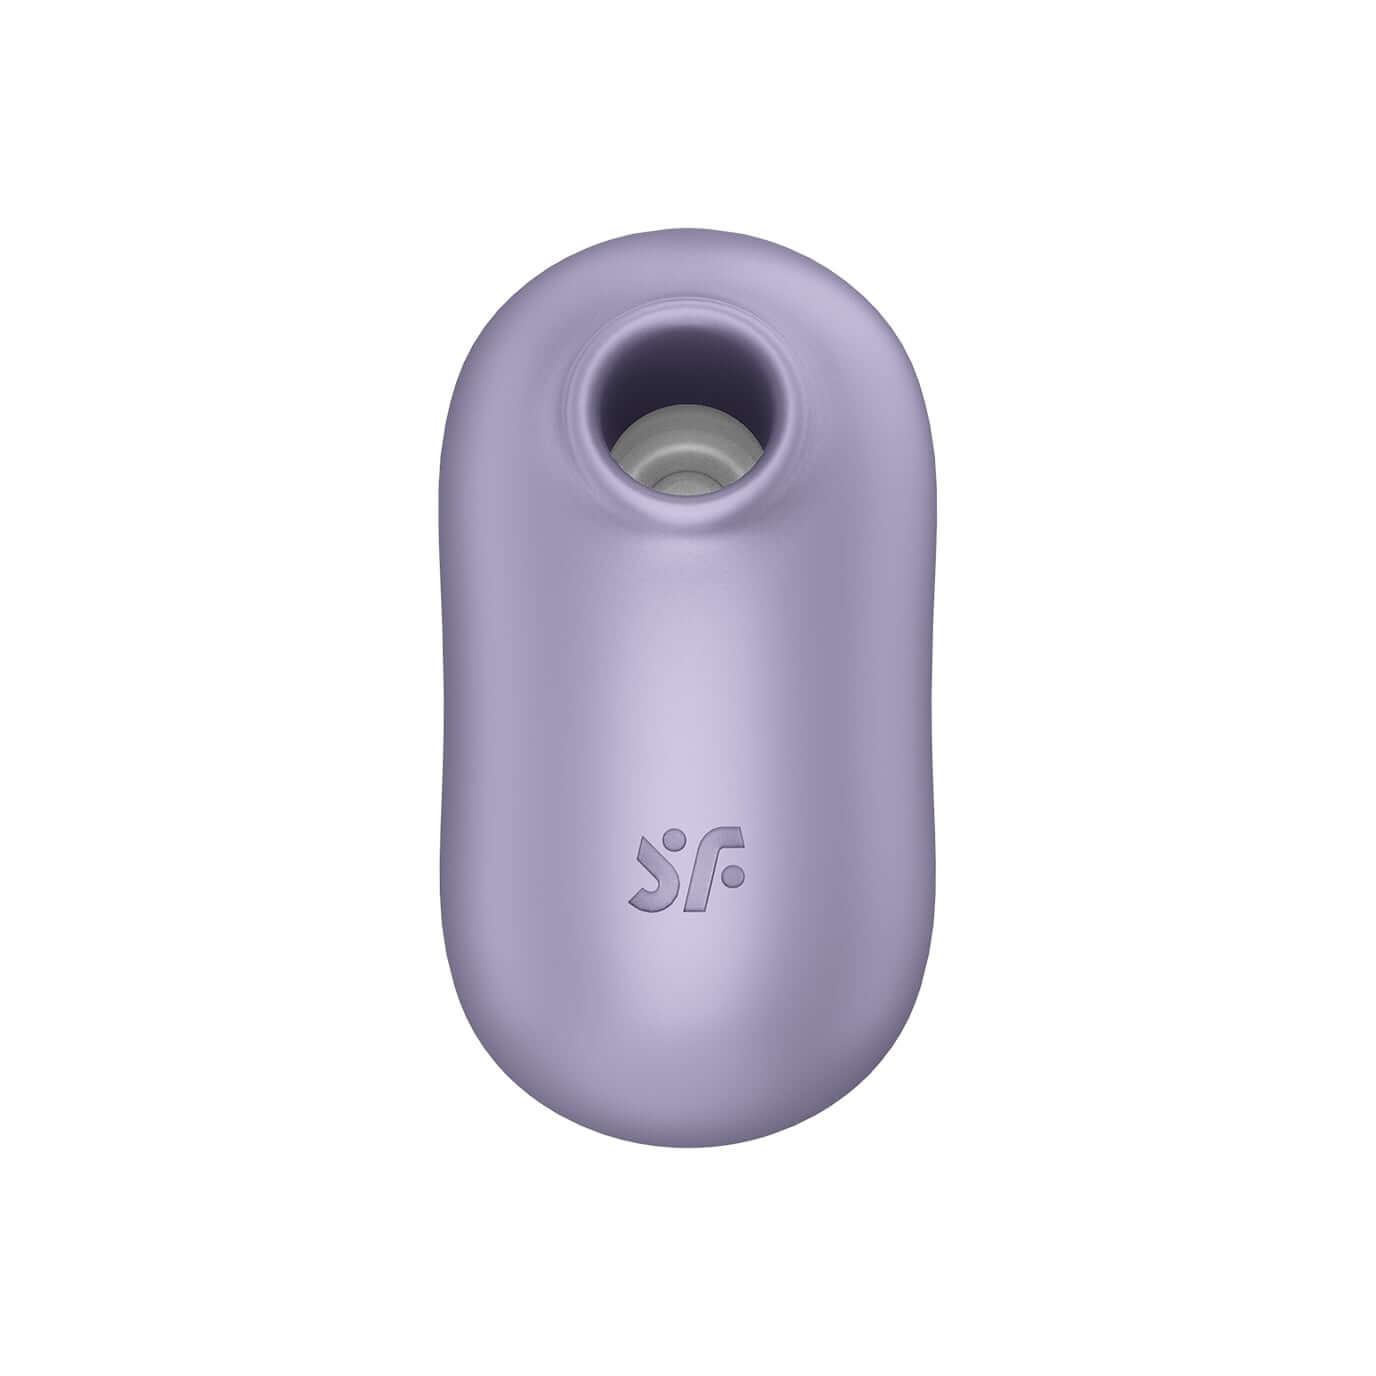 Satisfyer Pro To Go 2 - akkus, léghullámos csiklóizgató vibrátor (viola) Klitorisz izgatók kép